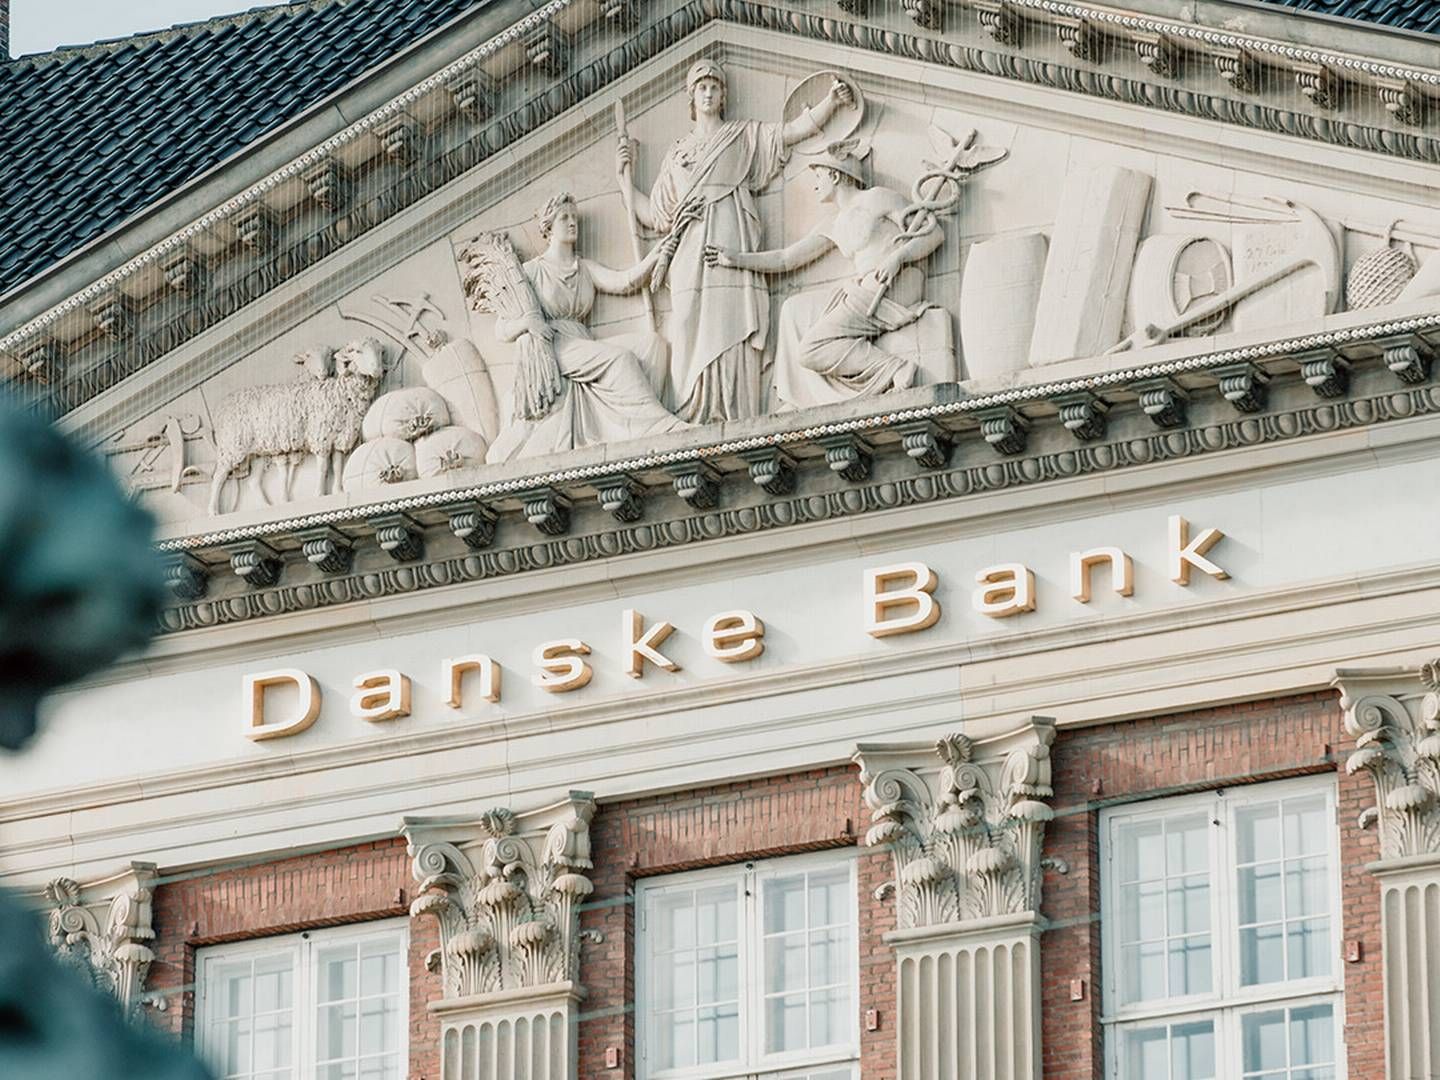 Danske Bank fremlagde i januar en klimaplan. Få danskere ser banken som en bidragsyder, når det kommer til klima, viser målinger. | Foto: Philip Madsen